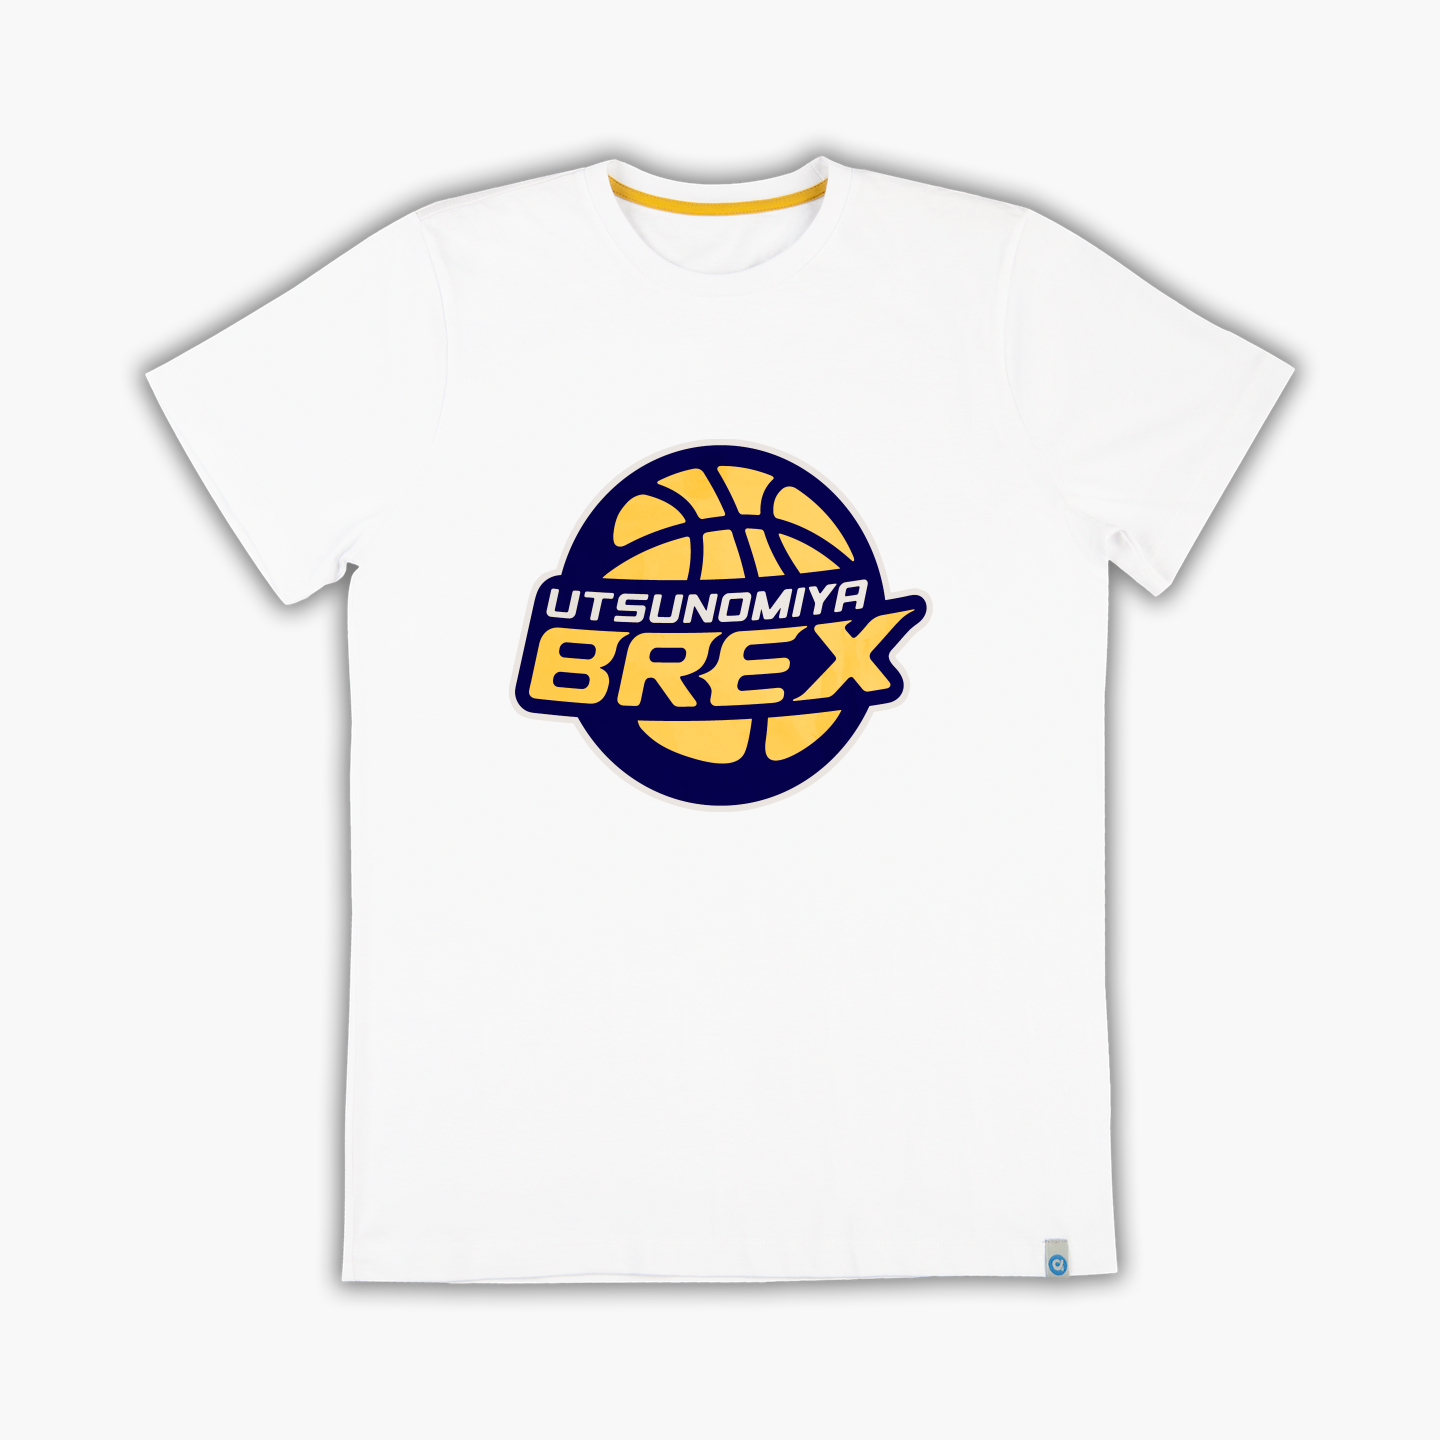 Utsunomiya Brex - Tişört